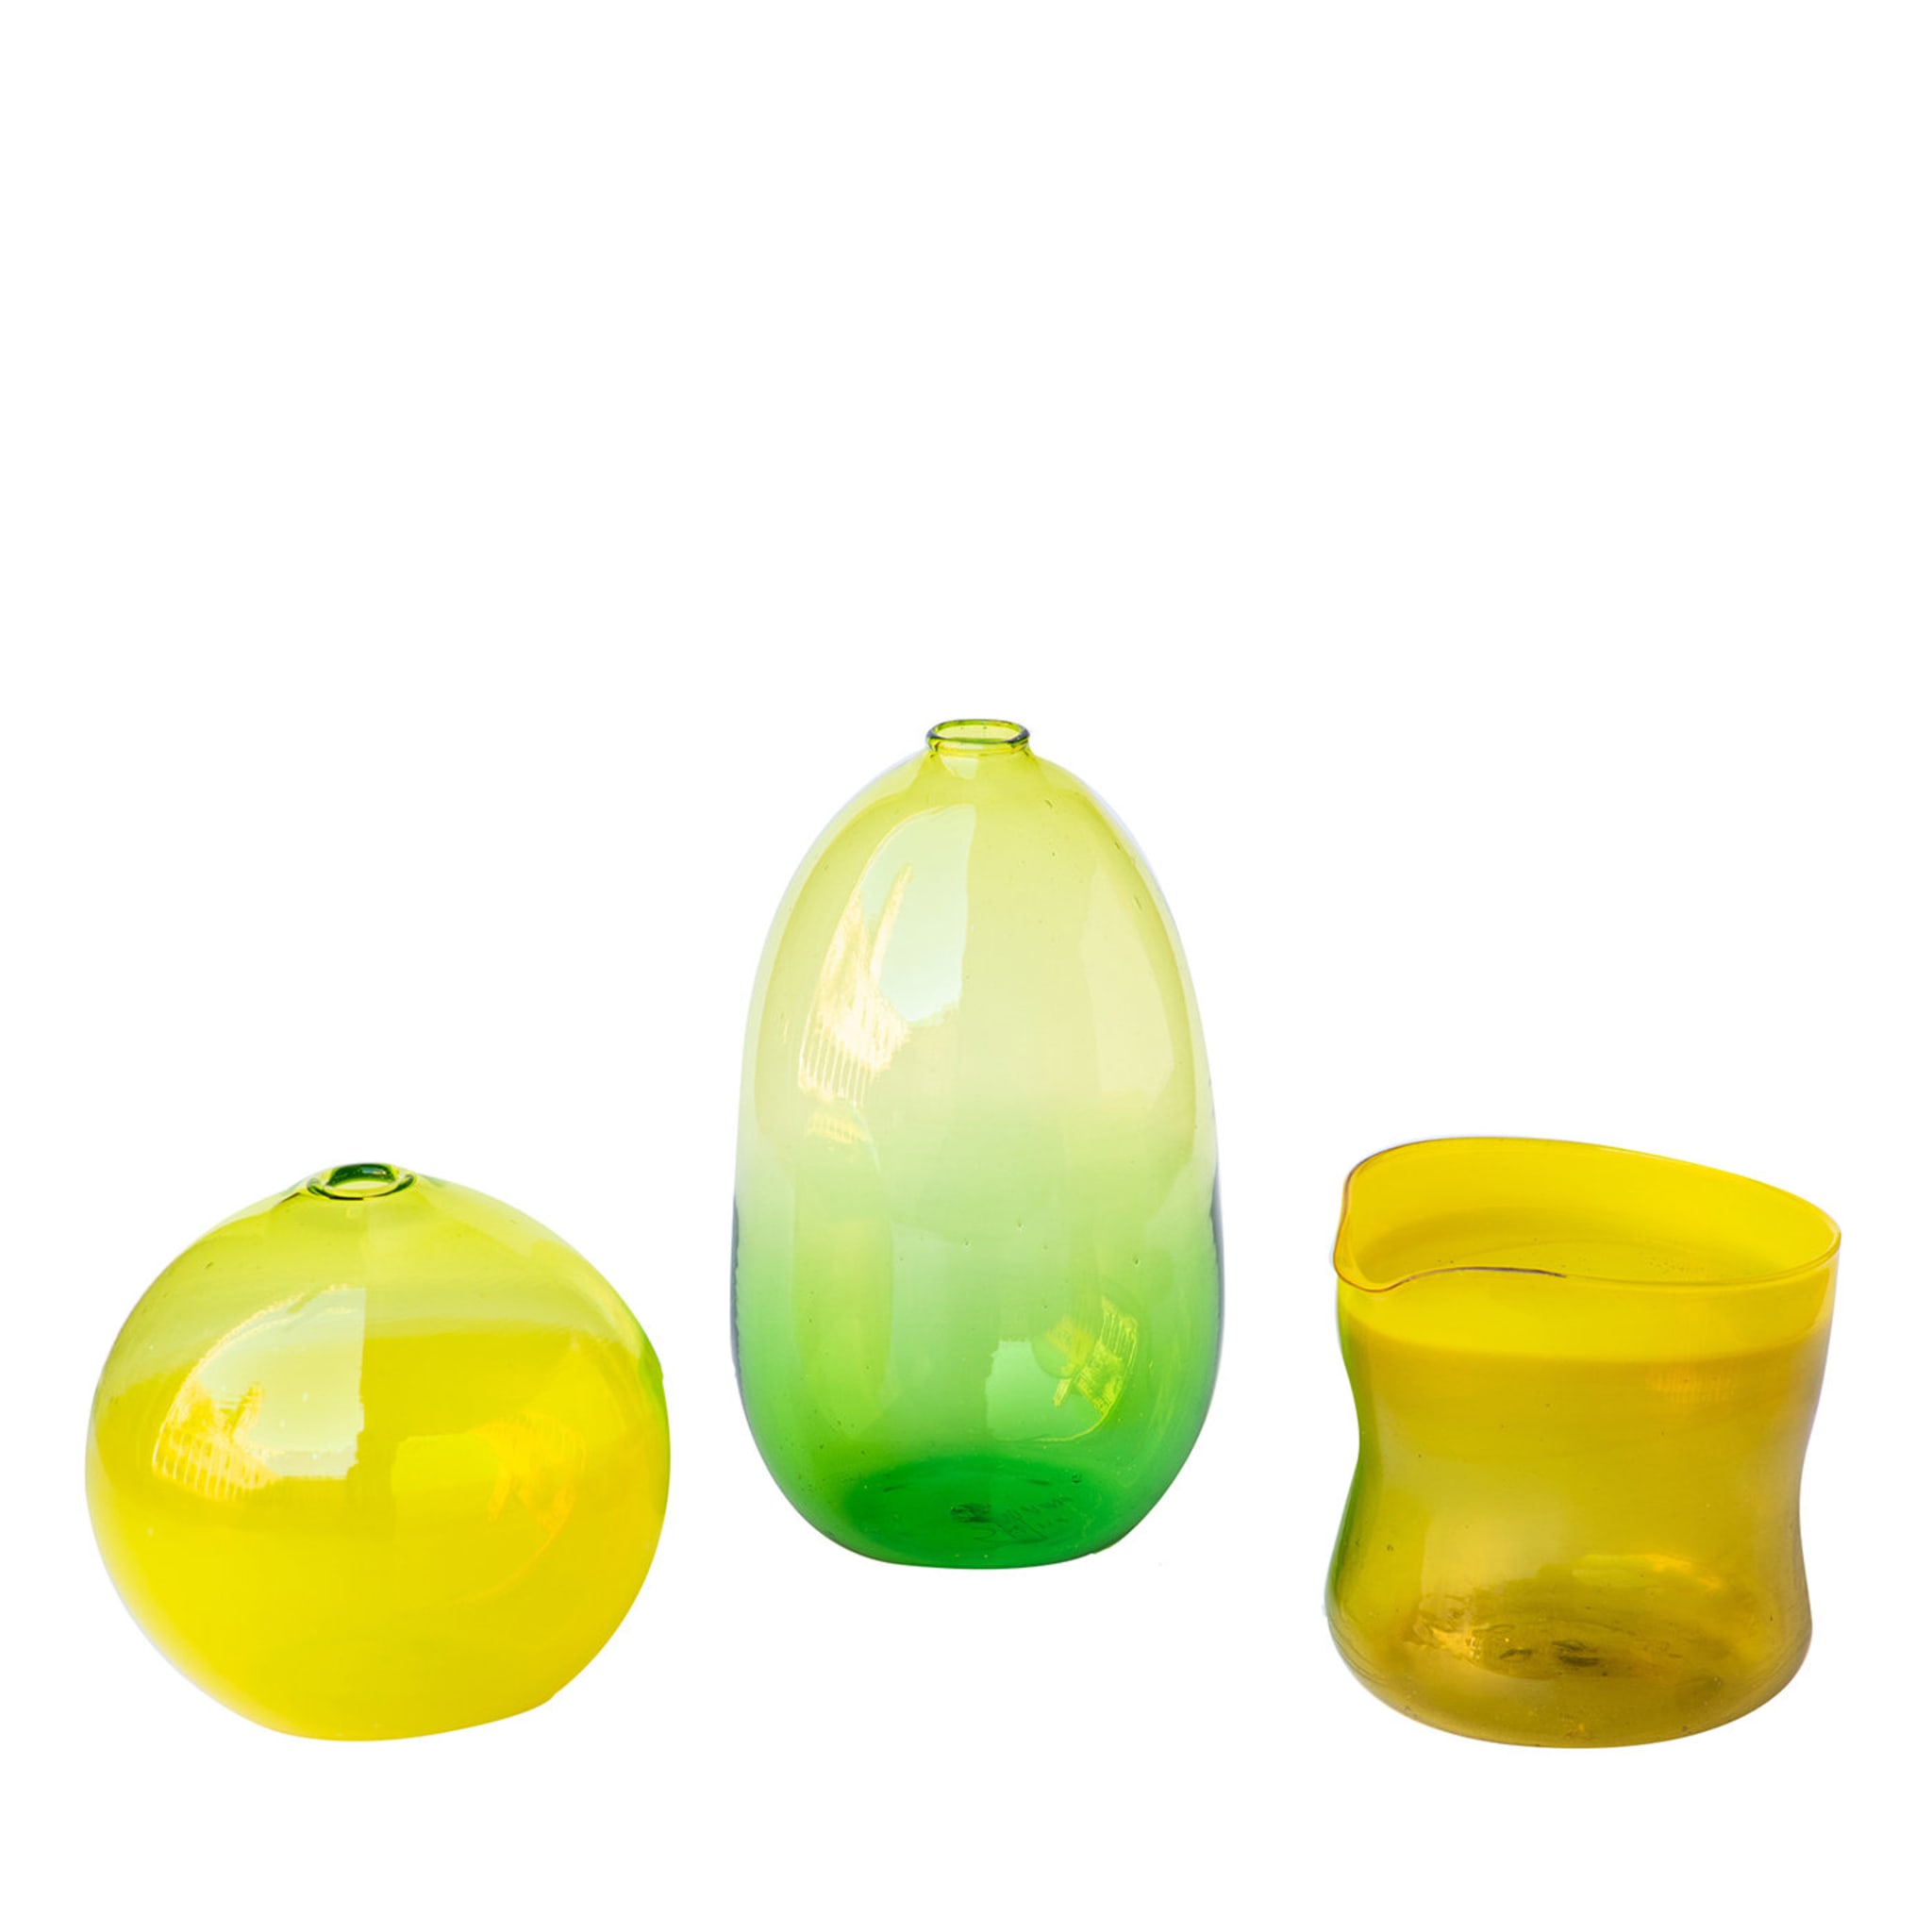 Ensemble de 3 petits vases jaune/vert #1 - Vue principale